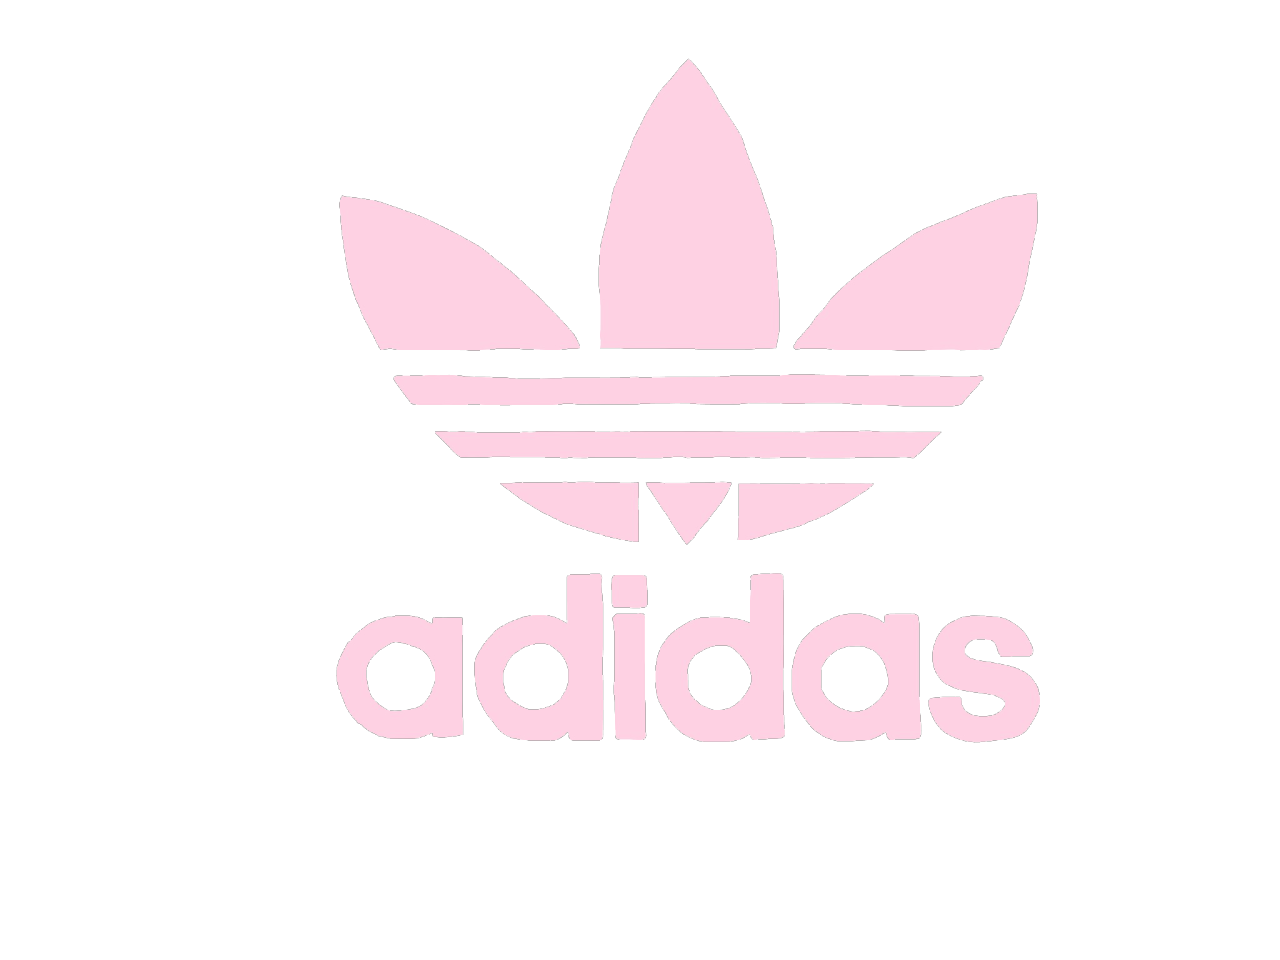 Adidas Pink logo. Adidas White Pink. Логотип розовый с золотом. King Rose logo. Неважно в луи или адидас